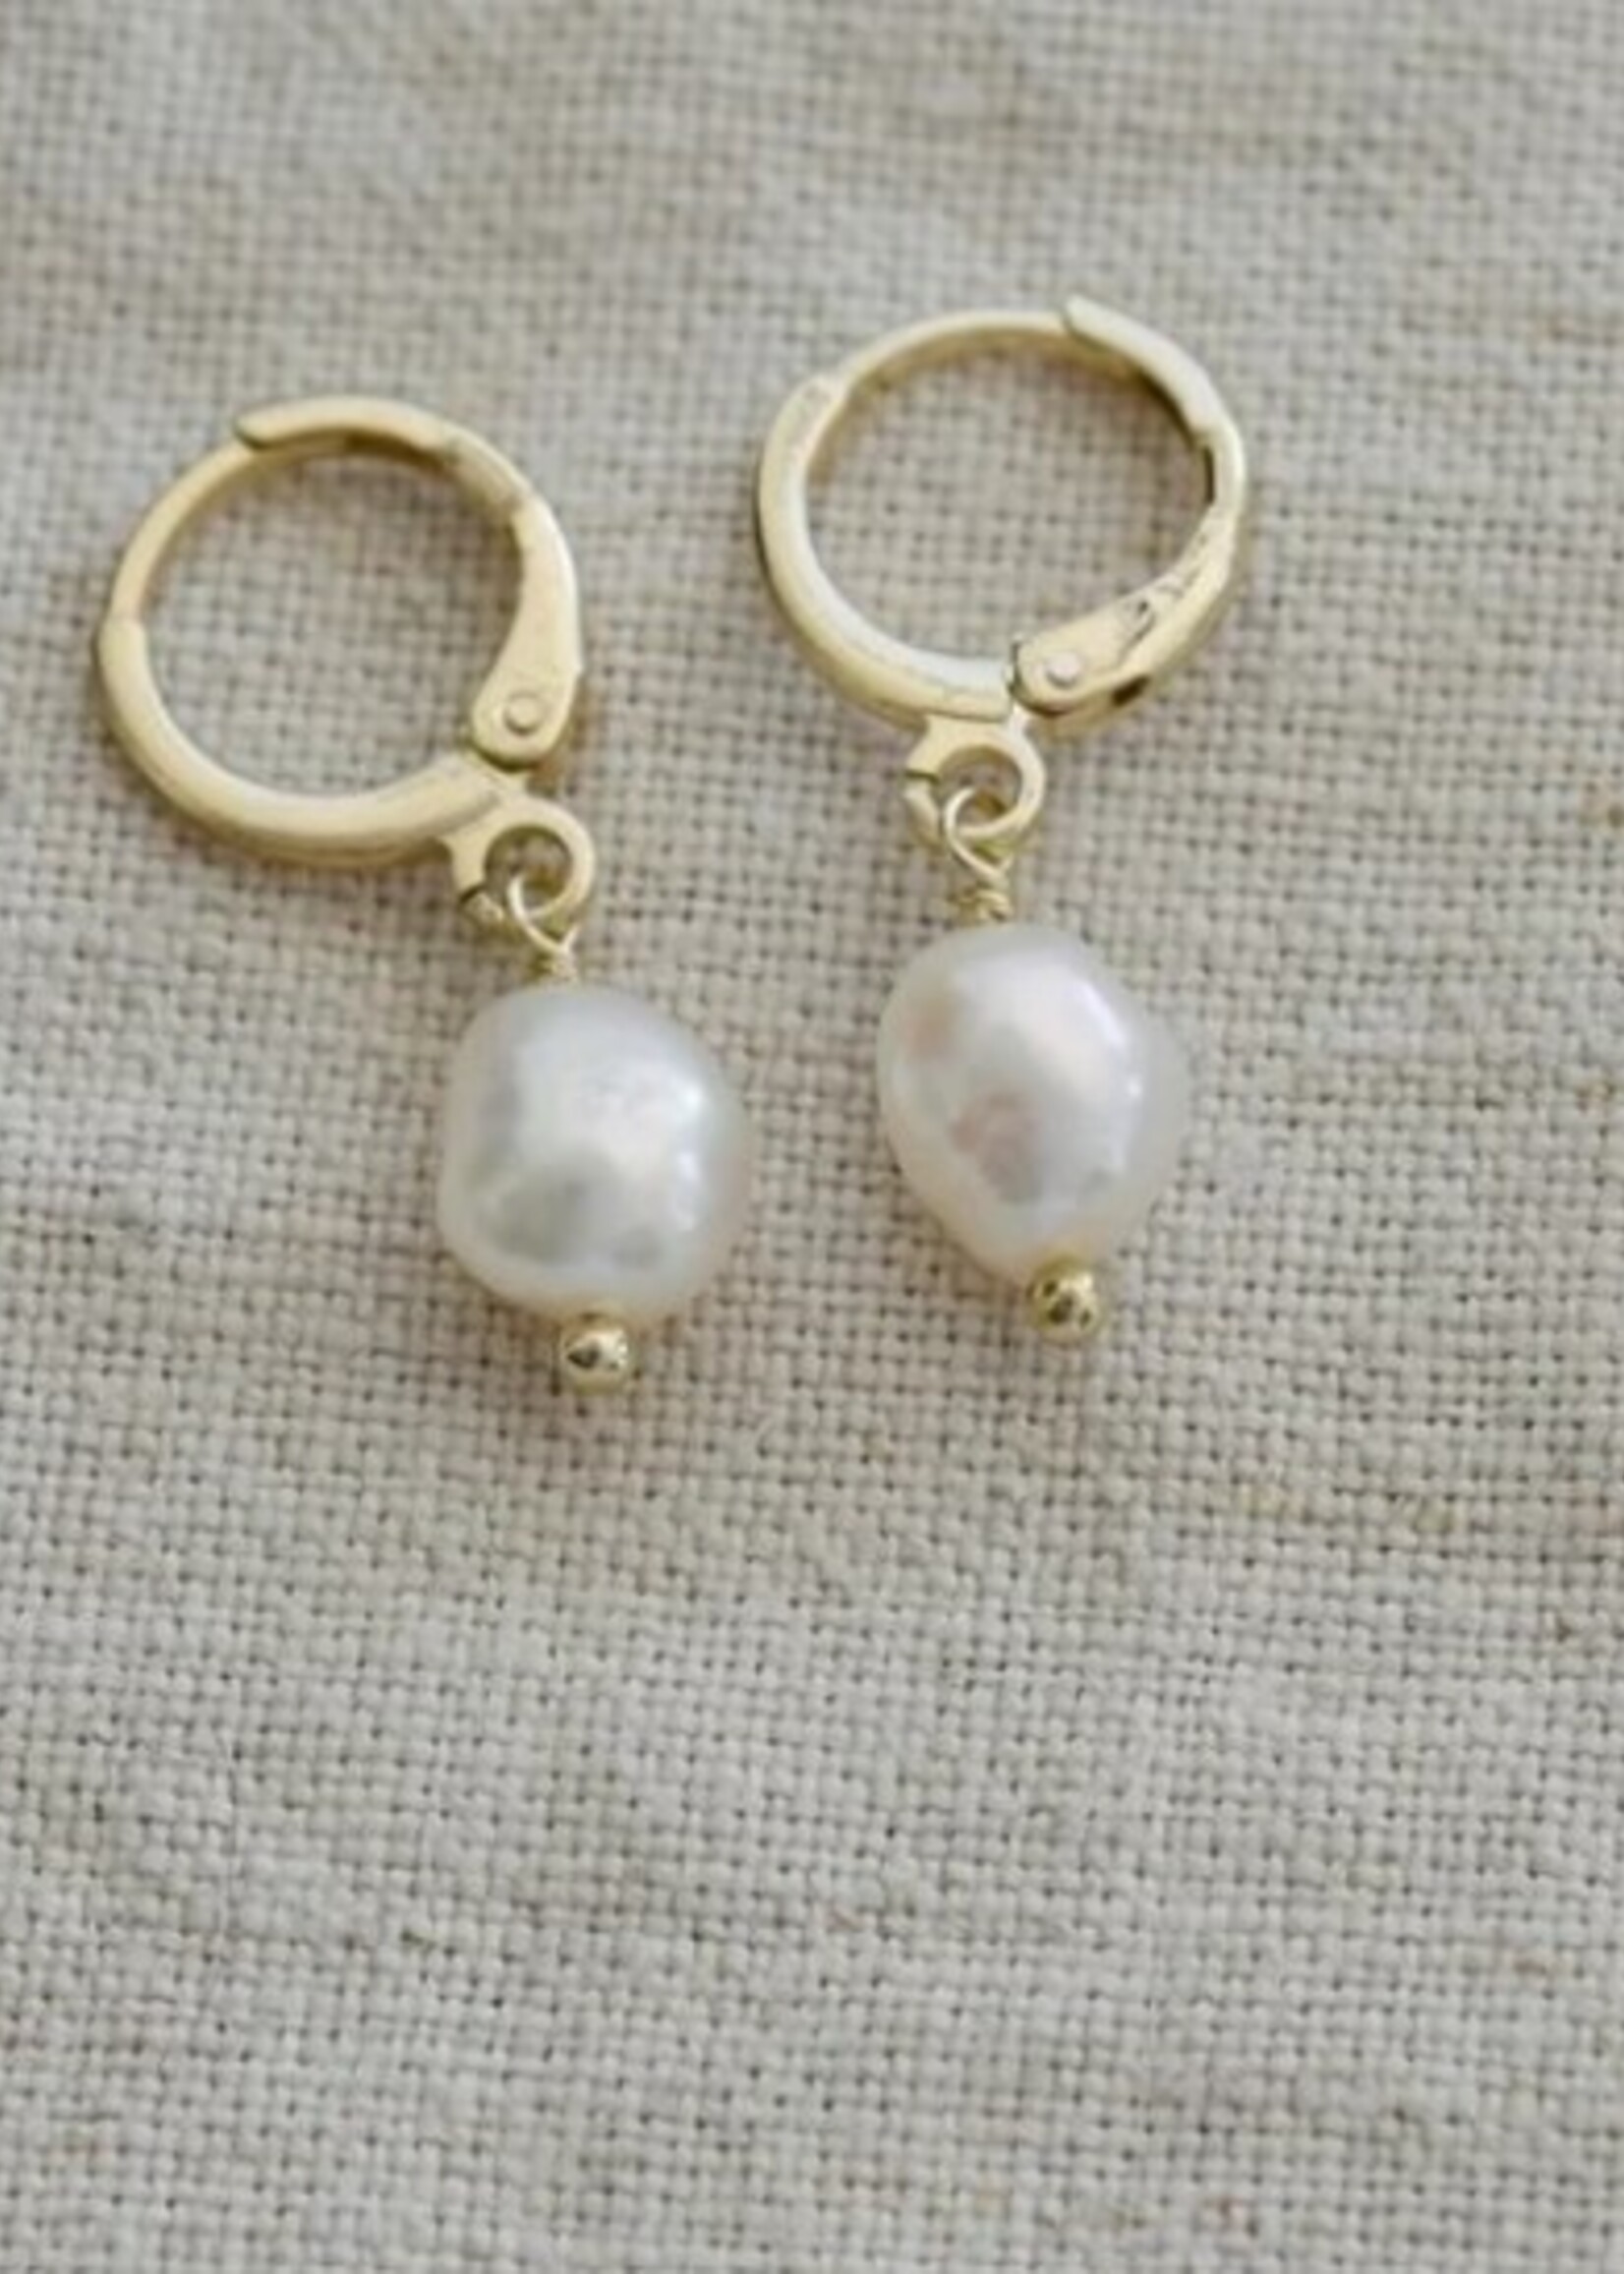 Glee Bitsy Hoop Earrings * Gold & White Pearl